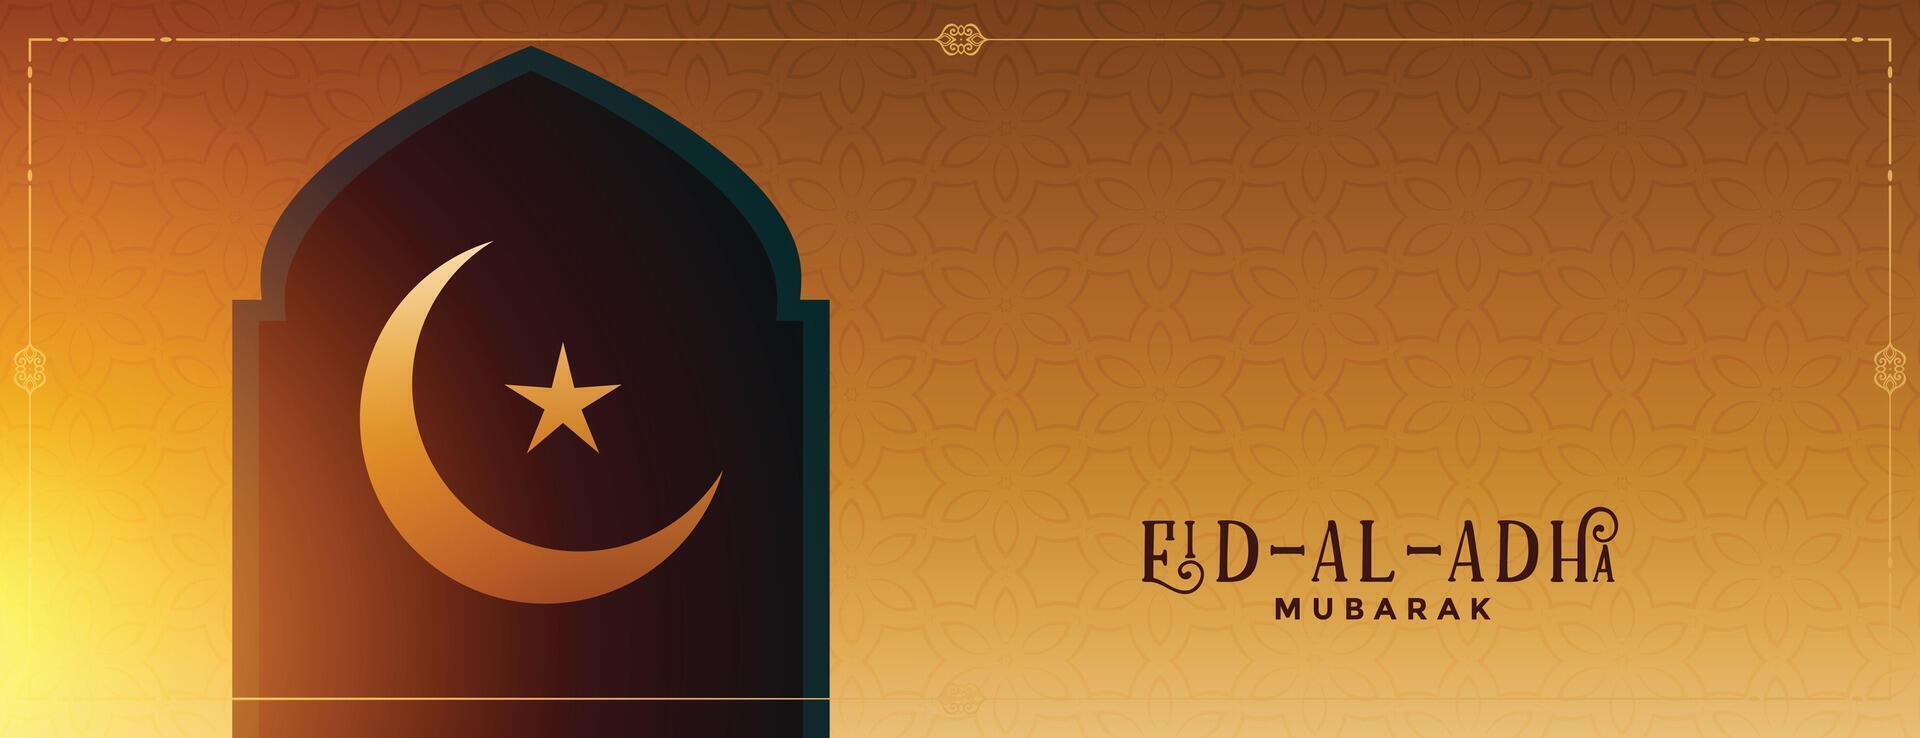 eid al adha islamico Festival auguri bandiera design vettore